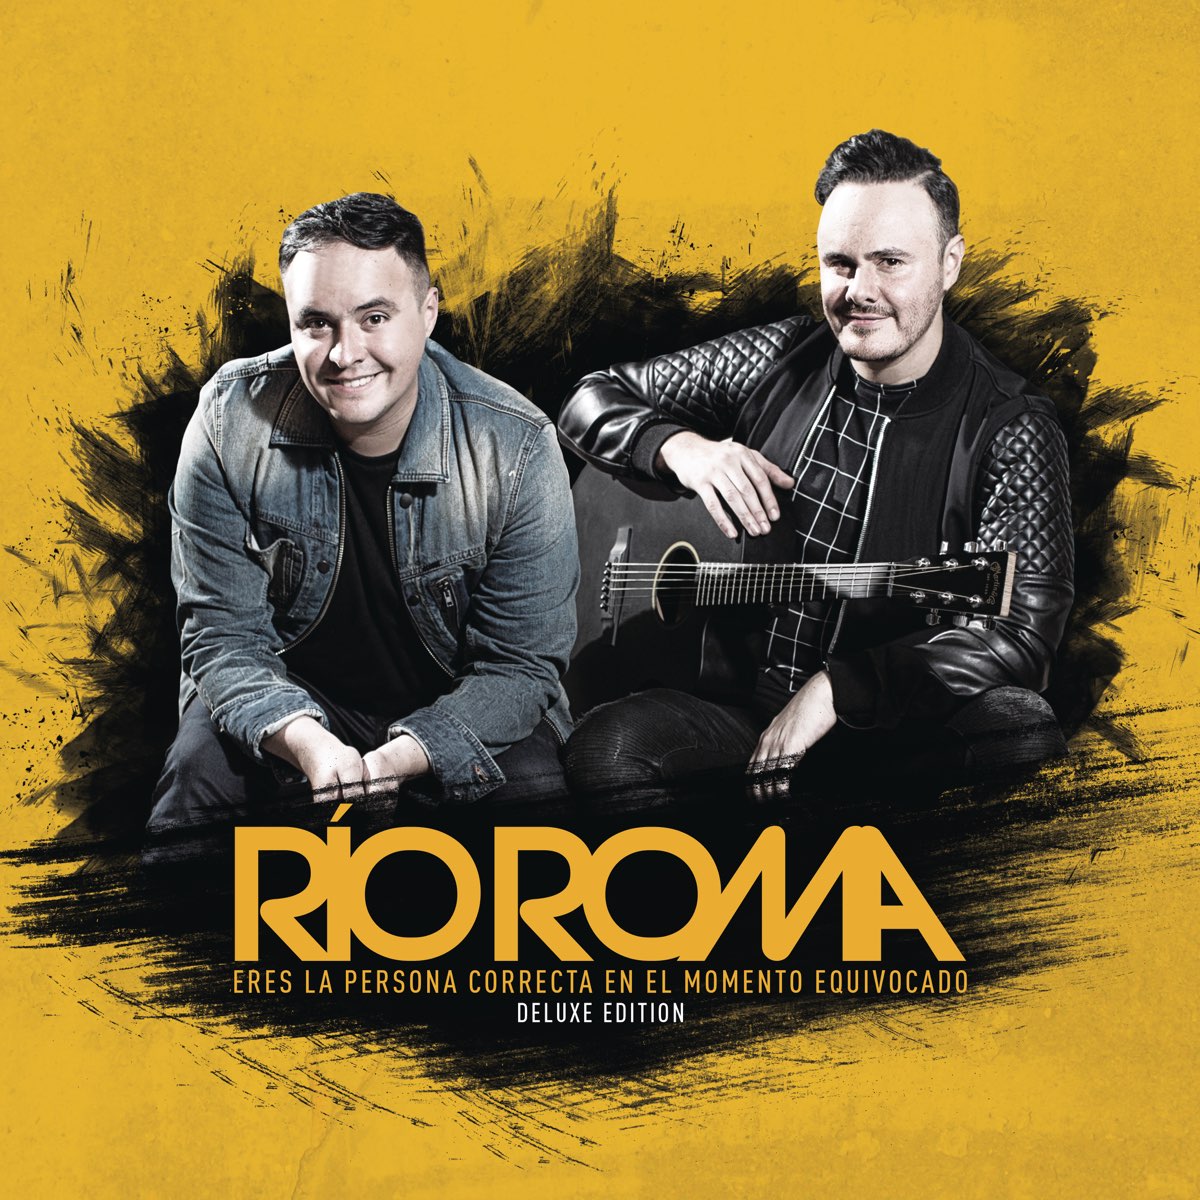 Lo Más Romántico de - EP” álbum de Río Roma en Apple Music